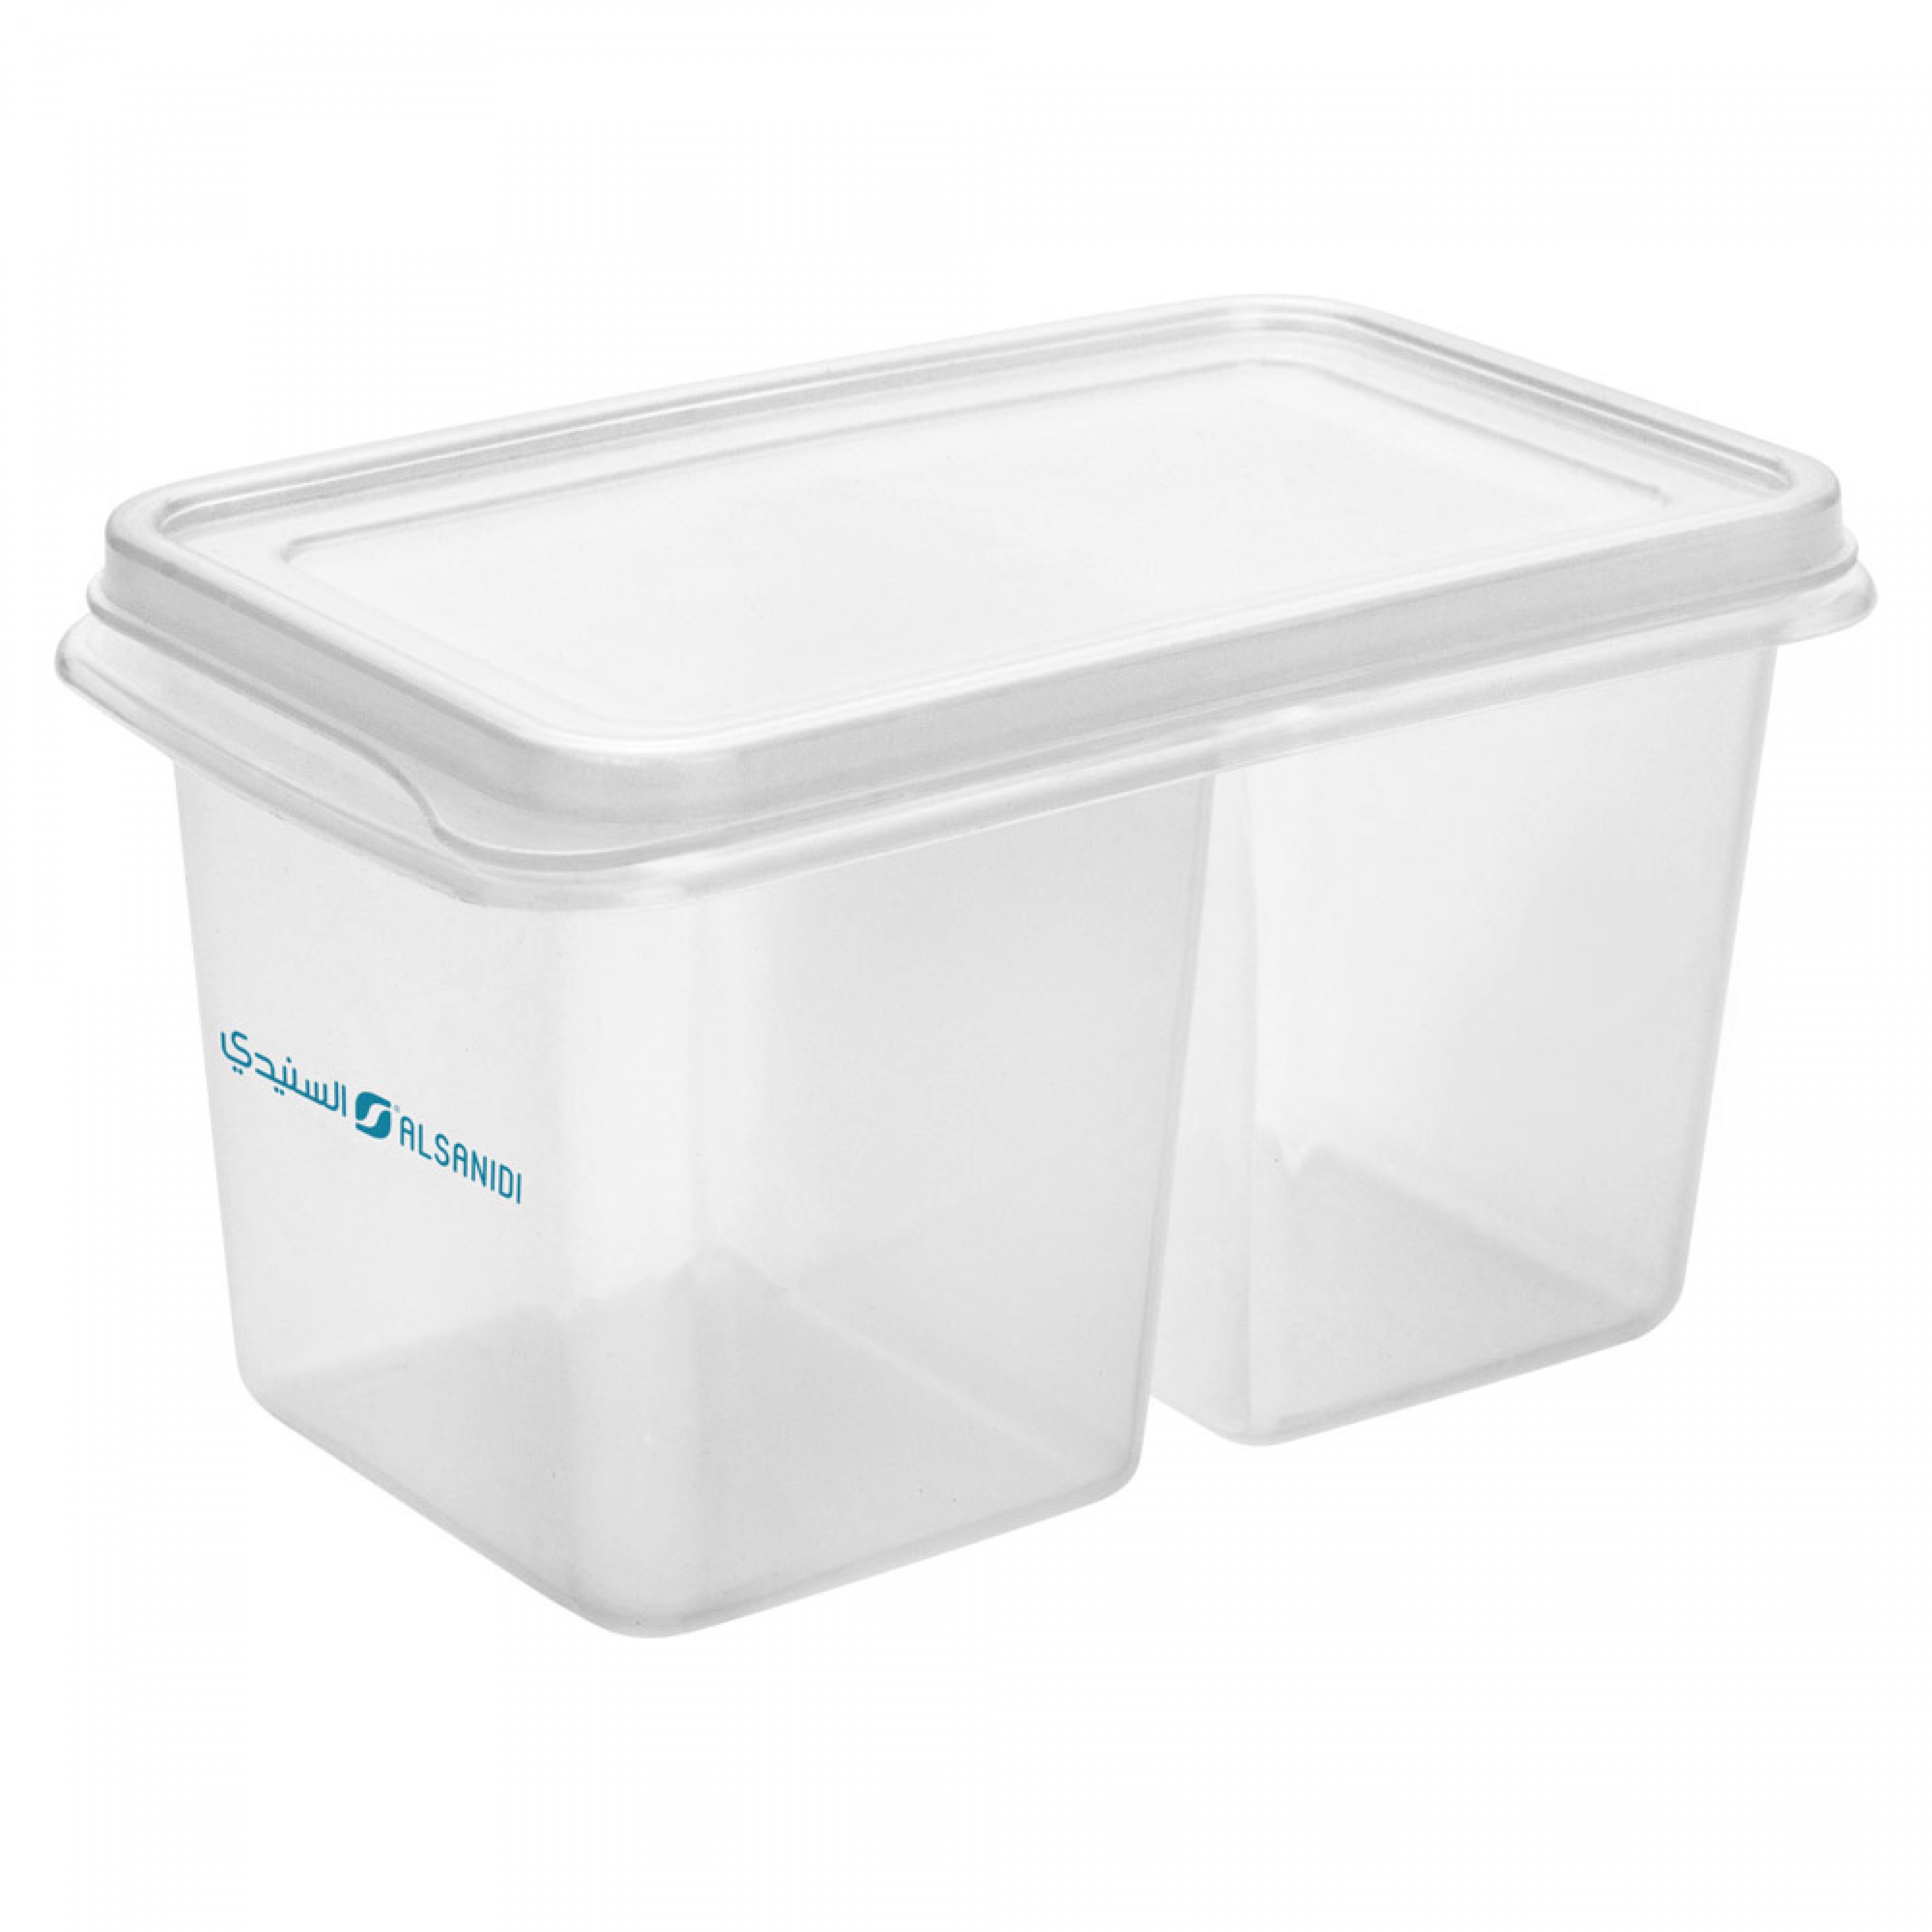 السنيدي، صندوق تخزين أطعمة، درج تنظيم وتخزين للثلاجة والفريزر، شفاف، مقاس 7*12*6.5 سم